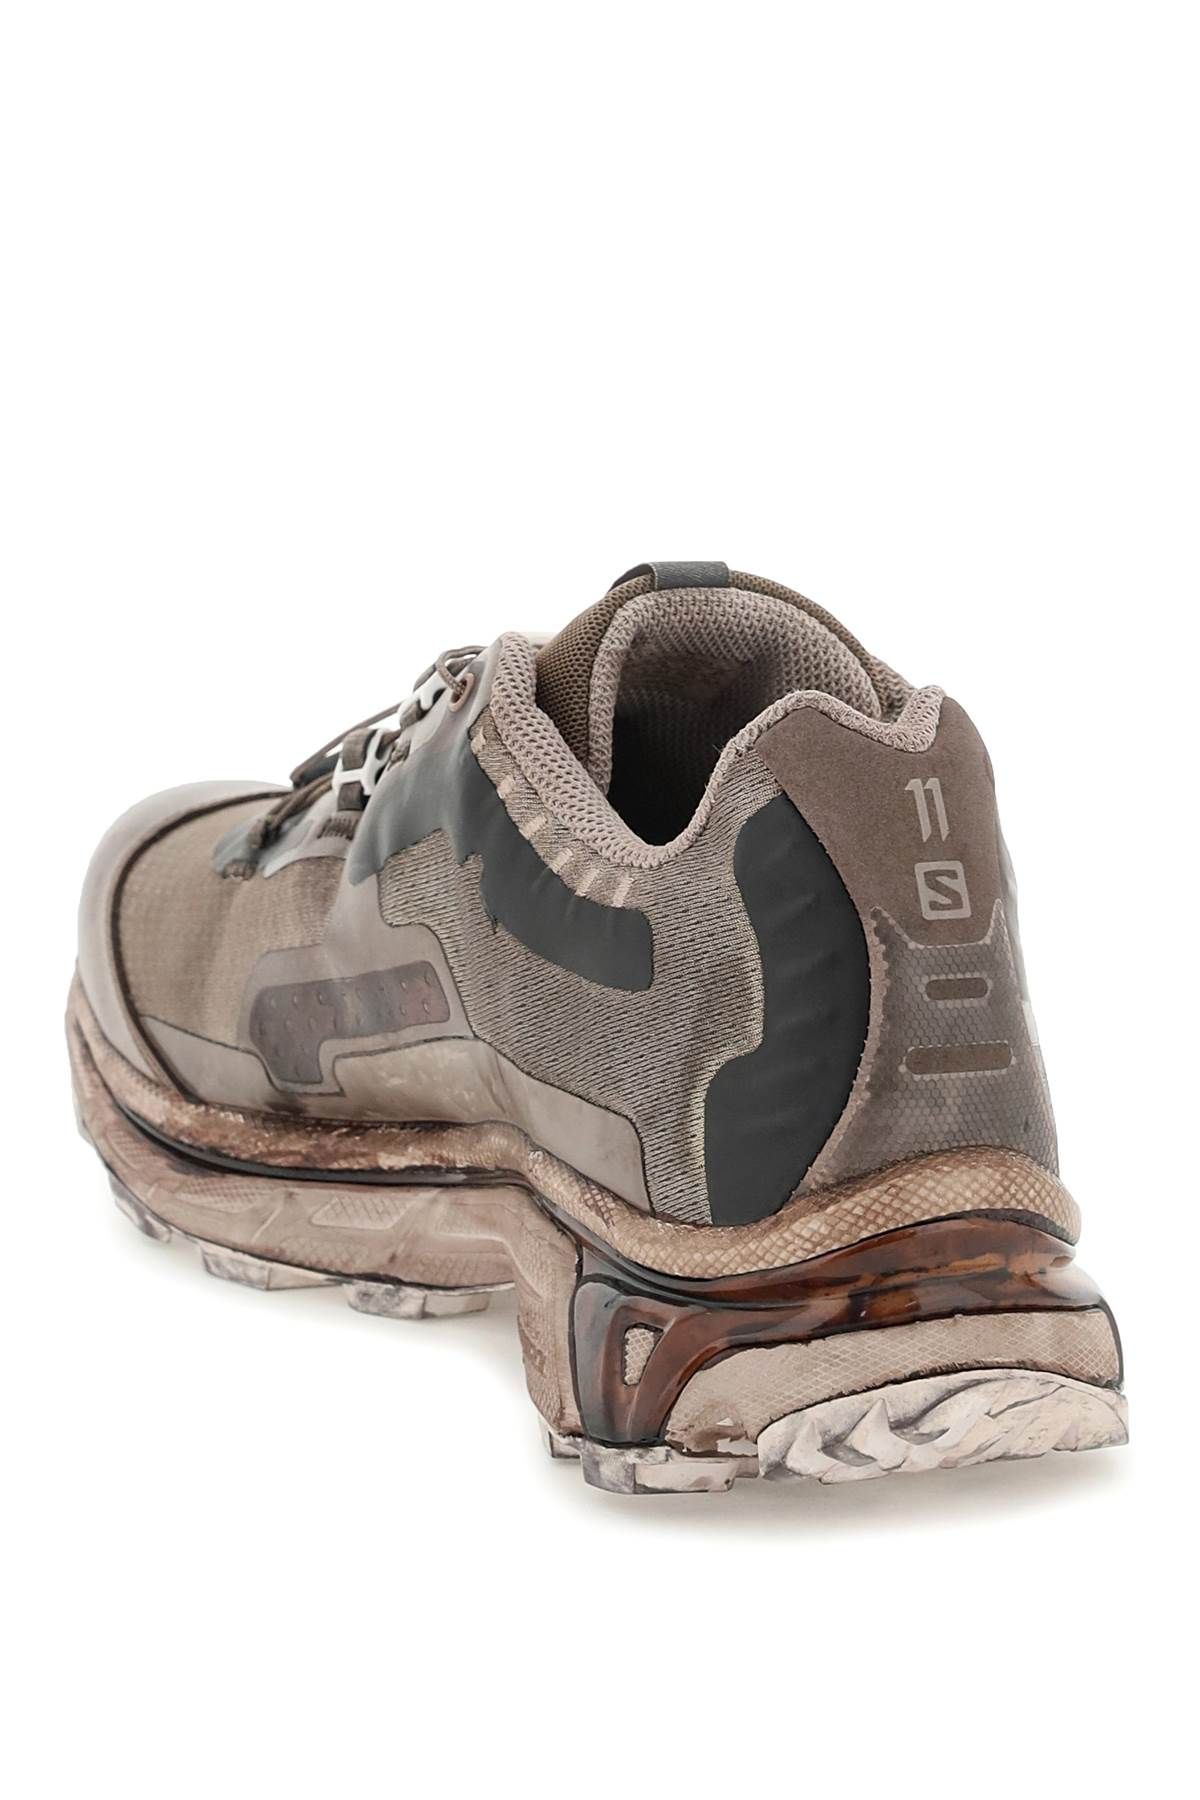 Shop Boris Bidjan Saberi Bamba 5 X Salomon Sneakers In Grey,brown